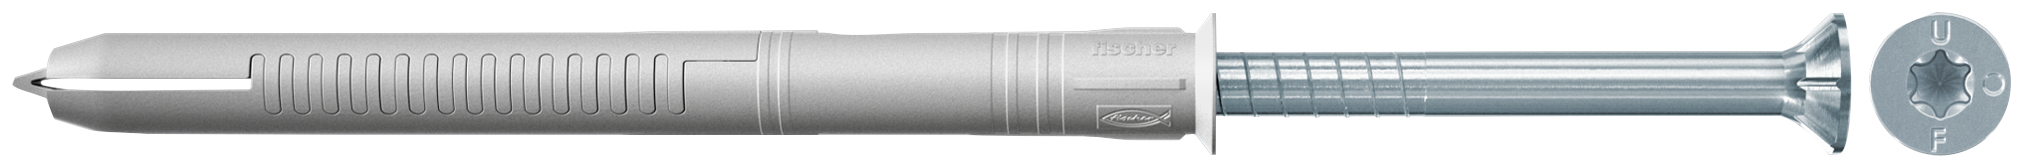 fischer Tassello prolungato FUR 8X80 T con vite torx (50 Pz.) Tassello prolungato in nylon per serramenti con vite premontata T.S.P. con impronta Torx.